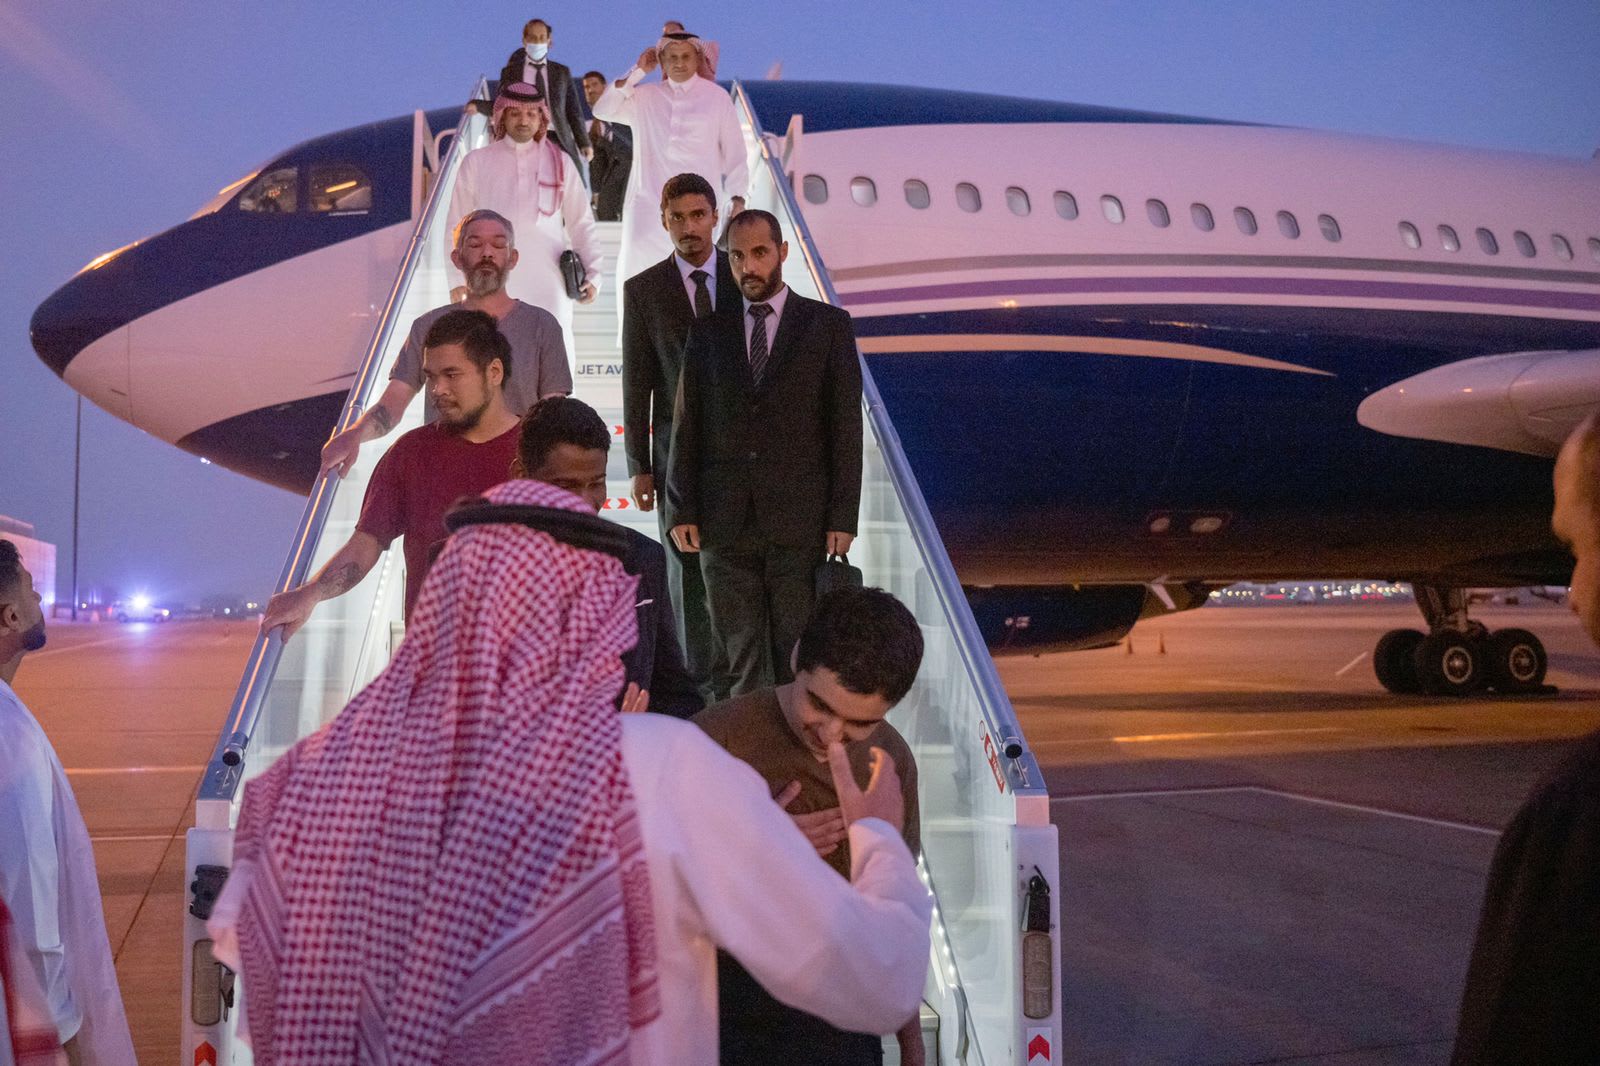 لقطات مصورة للحظة وصول 10 أسرى إلى الرياض بعد بوساطة سعودية بين روسيا وأوكرانيا